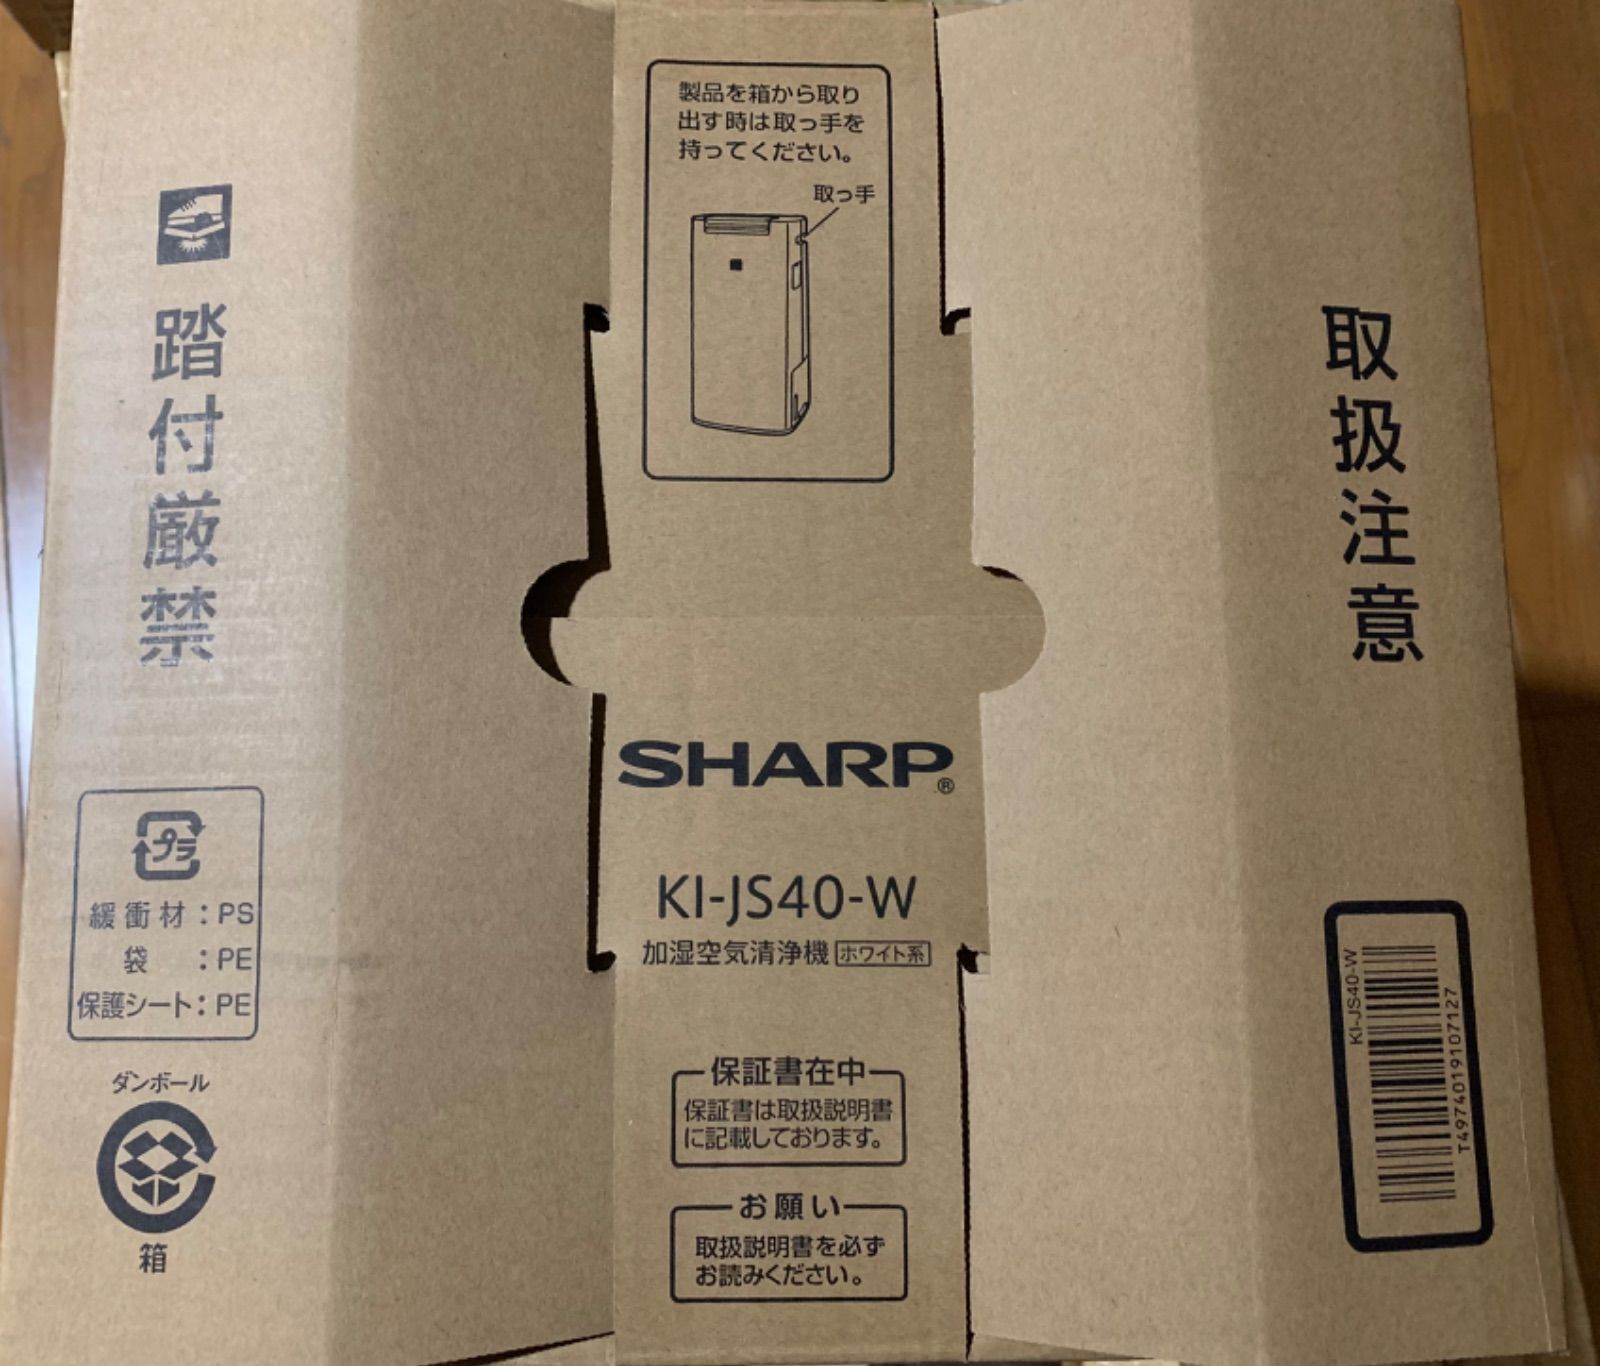 SHARP プラズマクラスター KI-JS40 取扱説明書 - 空調